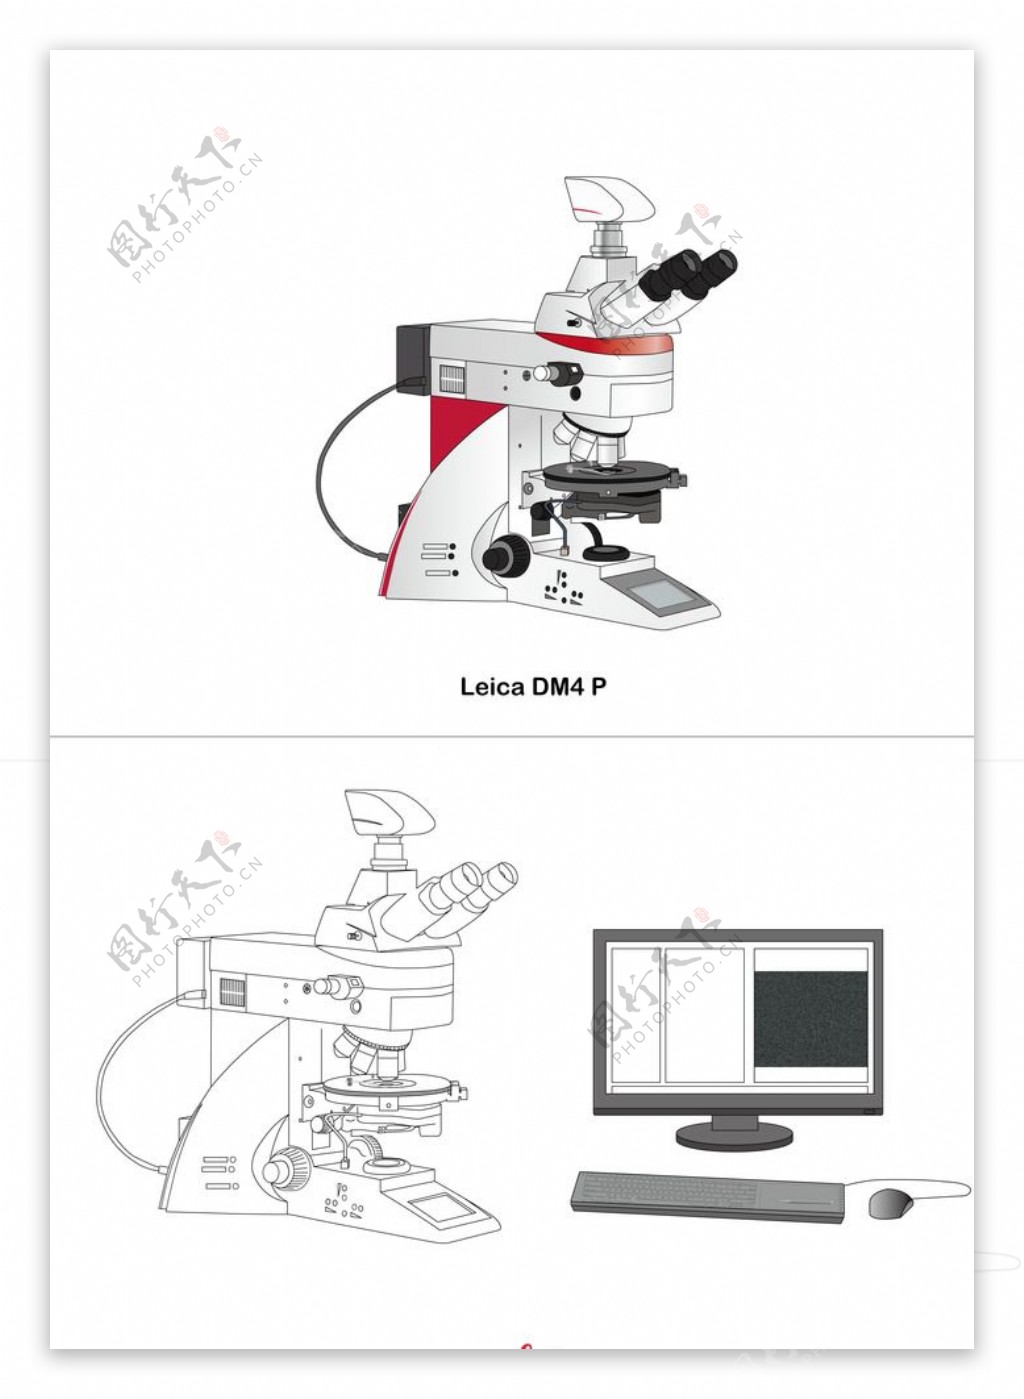 偏光显微镜Leica